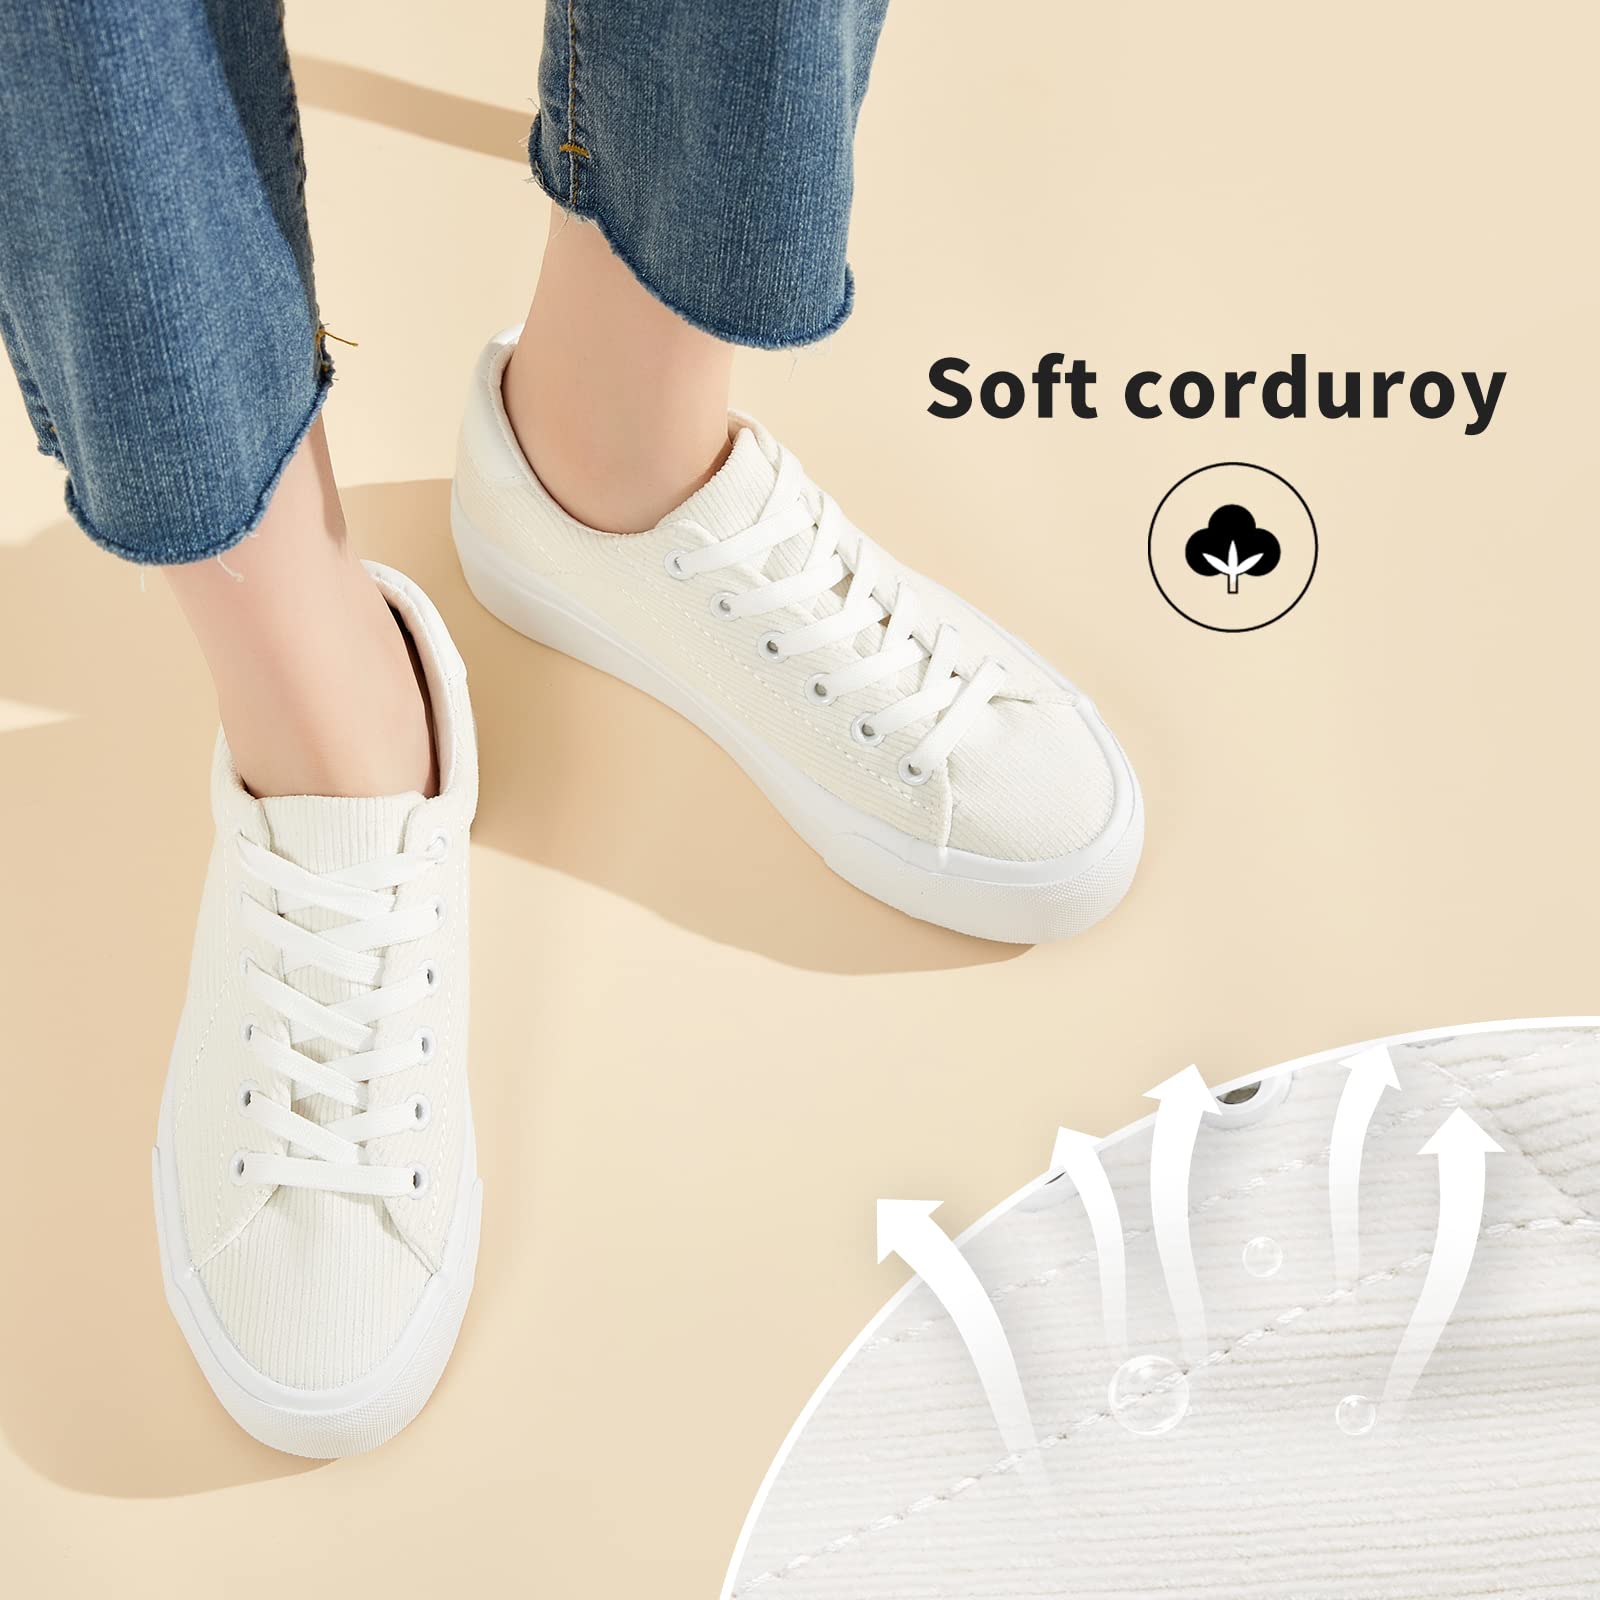 THATXUAOV Womens Platform Sneakers White Tennis Shoes